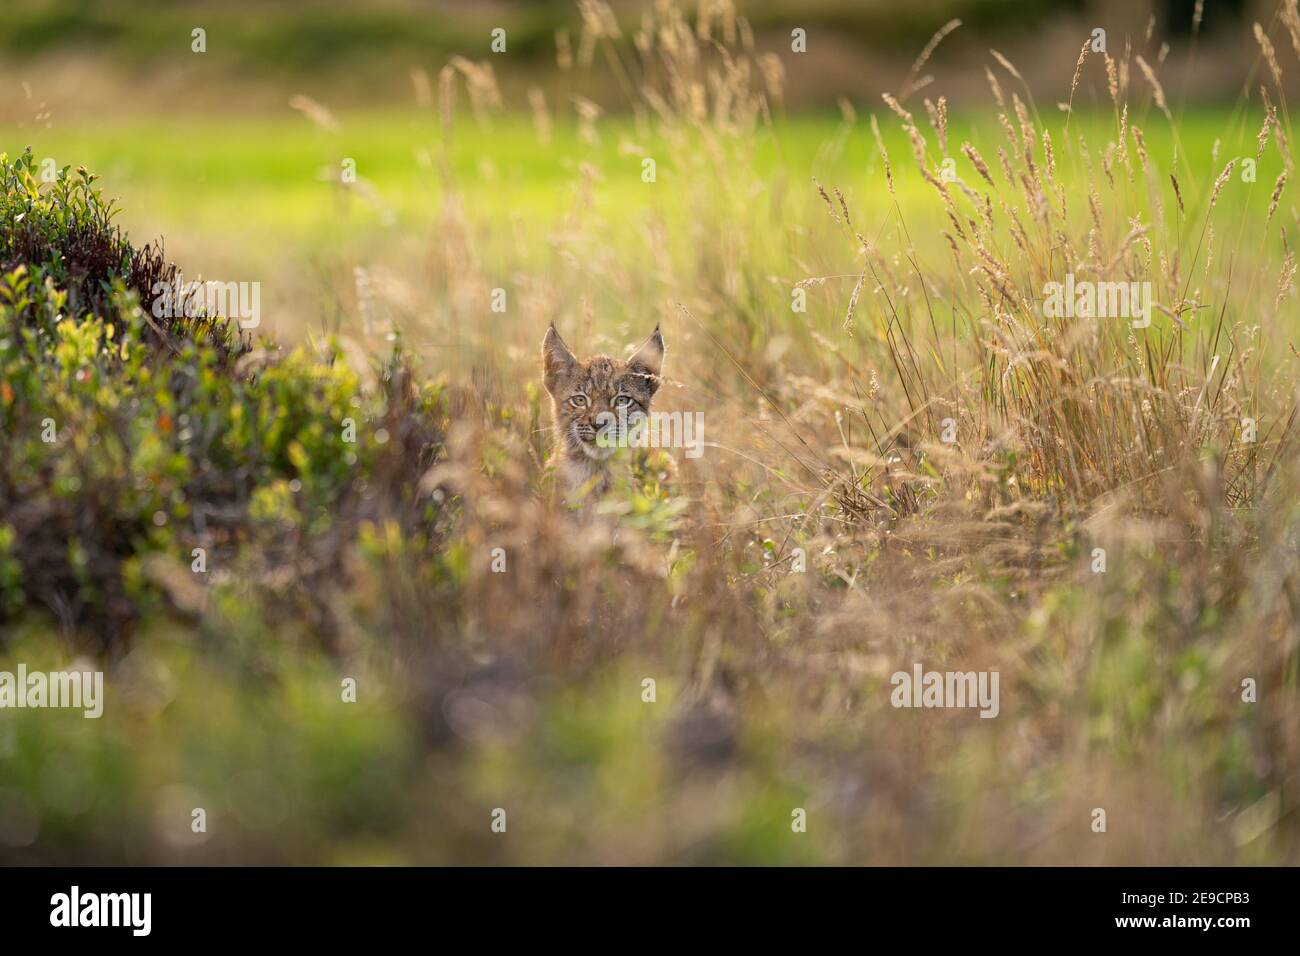 Cucciolo di Lynx nascosto nell'erba gialla alta. Testa che fuoriesce dall'erba Foto Stock